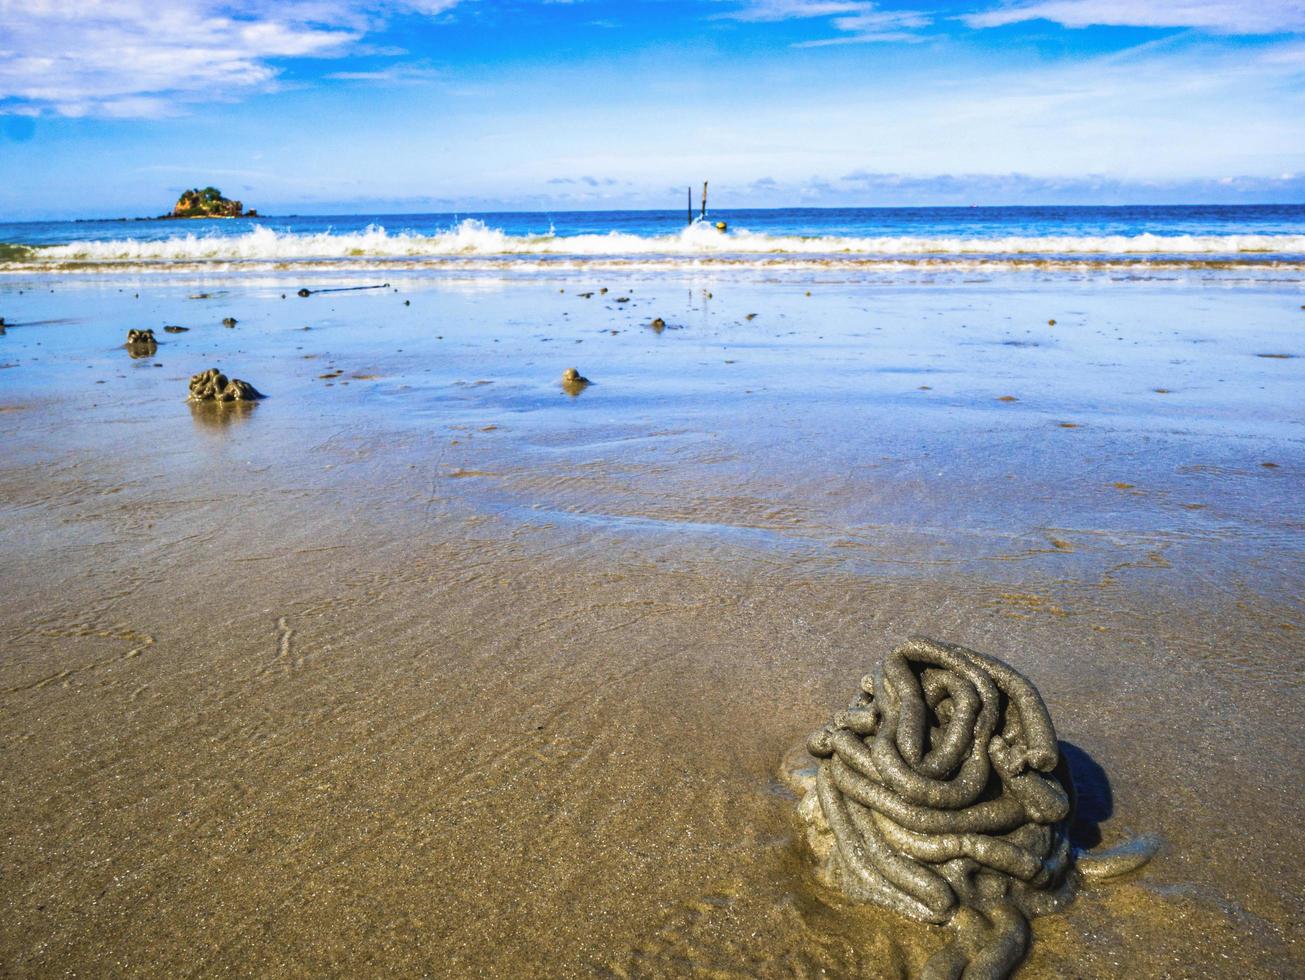 cierre los yesos de lombriz con un océano idílico y un horizonte interminable en la playa, concepto de verano foto